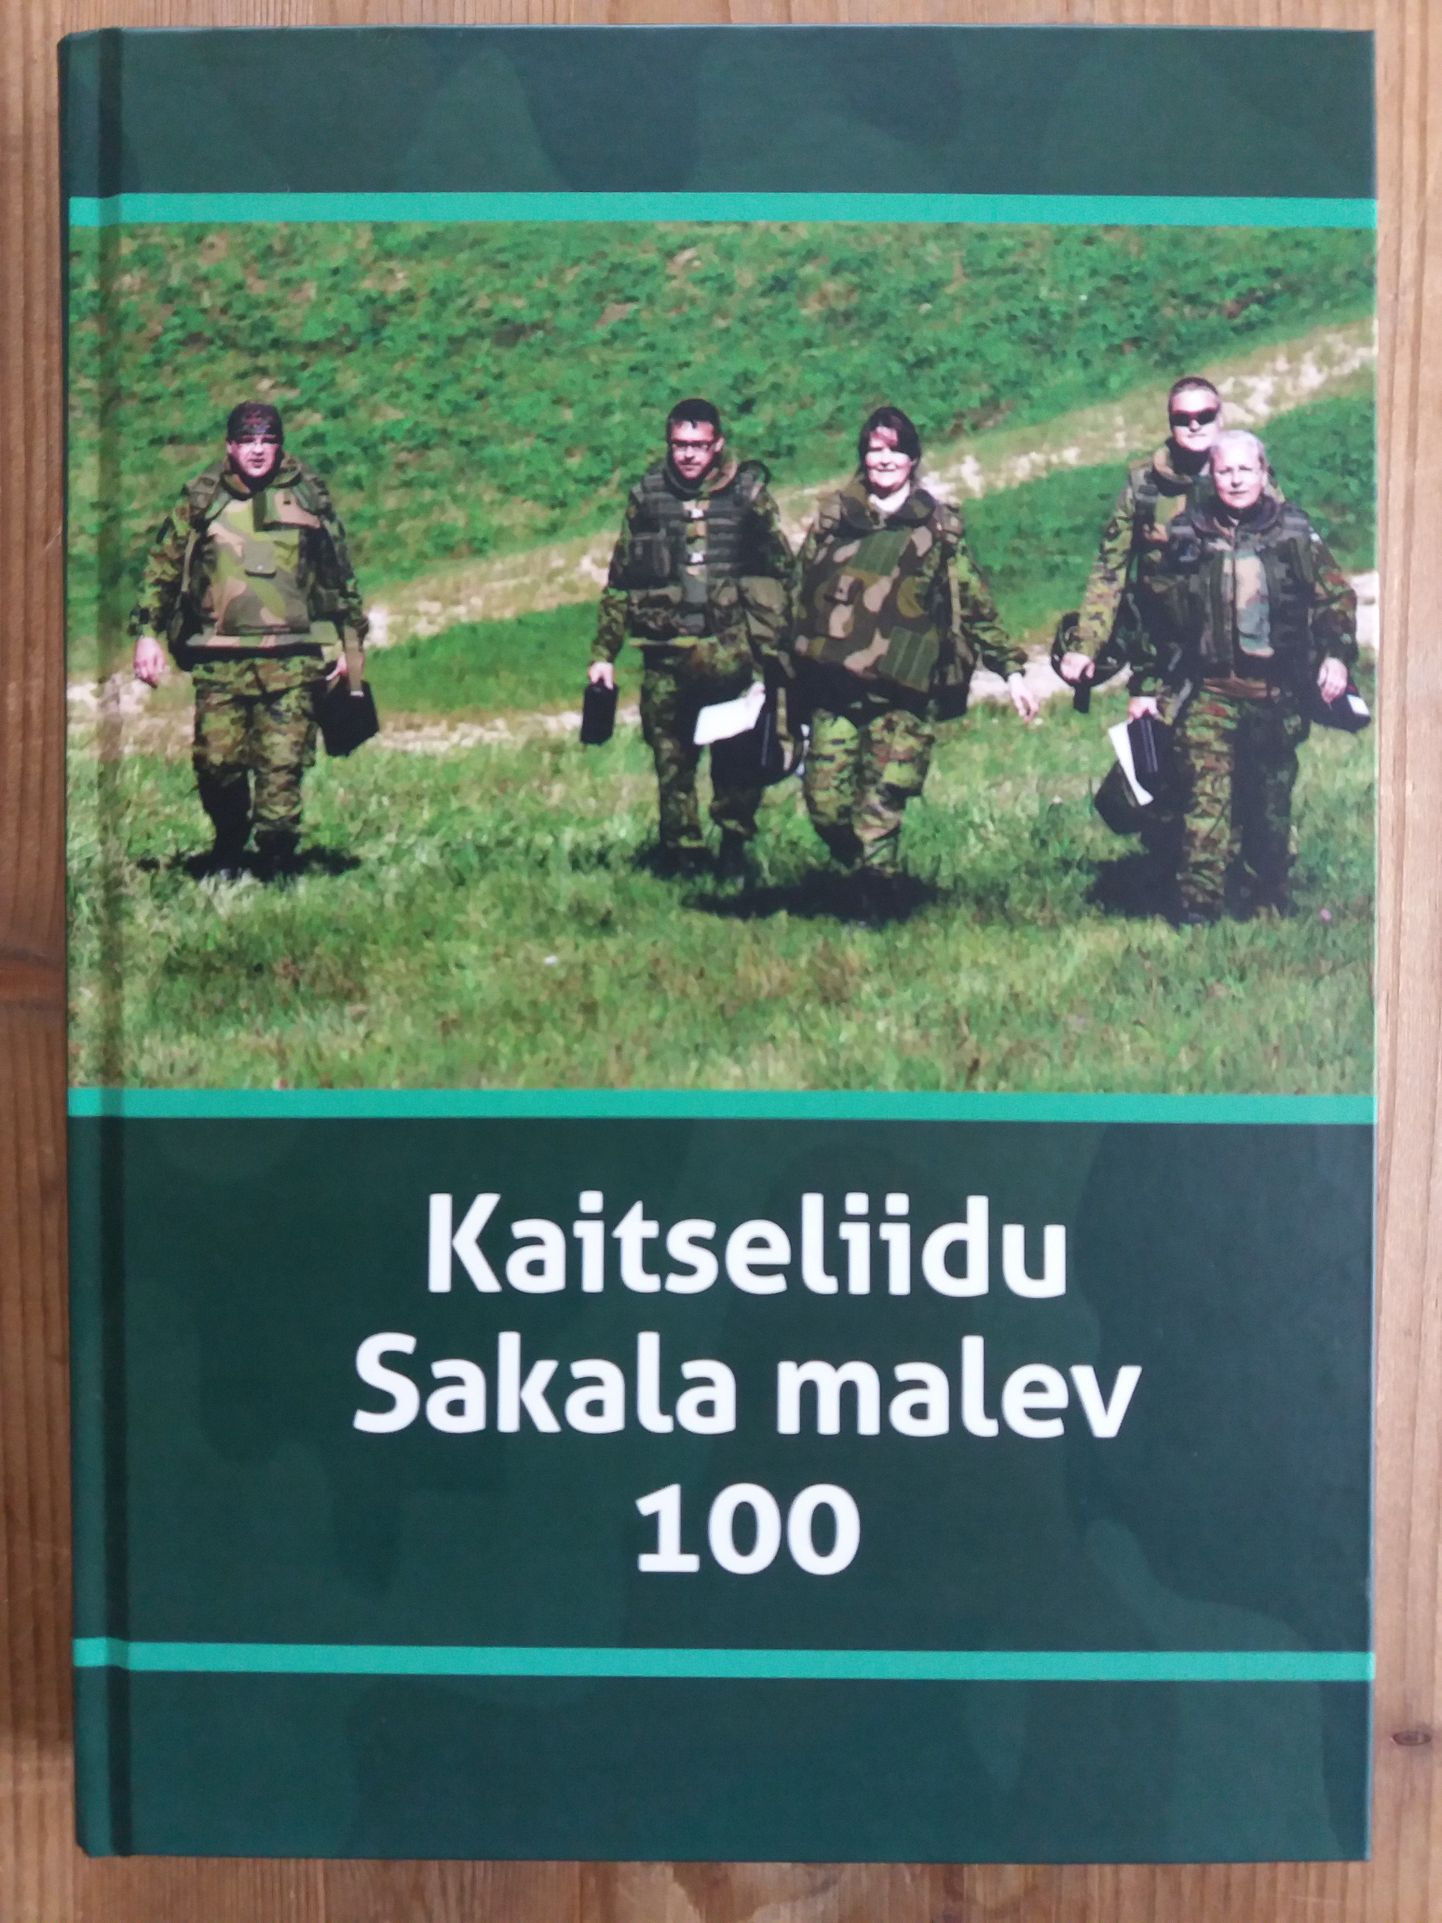 Sakala malev tutvustab neljapäeval raamatut «Kaitseliidu Sakala malev 100».